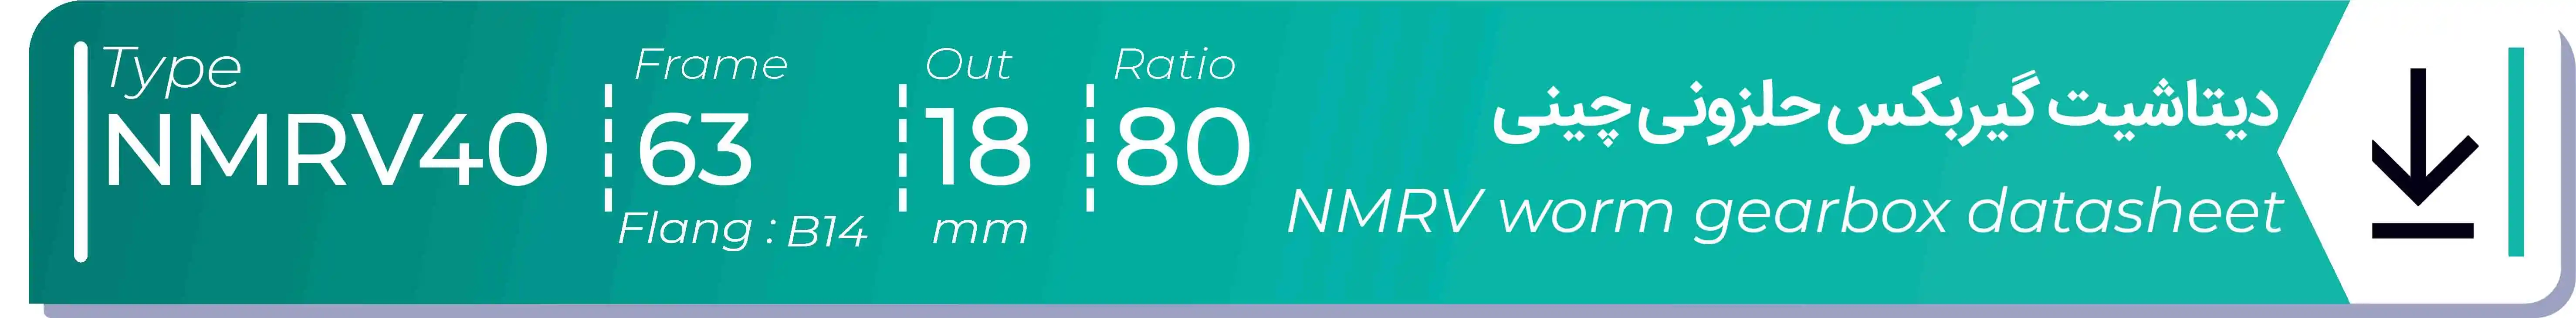  دیتاشیت و مشخصات فنی گیربکس حلزونی چینی   NMRV40  -  با خروجی 18- میلی متر و نسبت80 و فریم 63